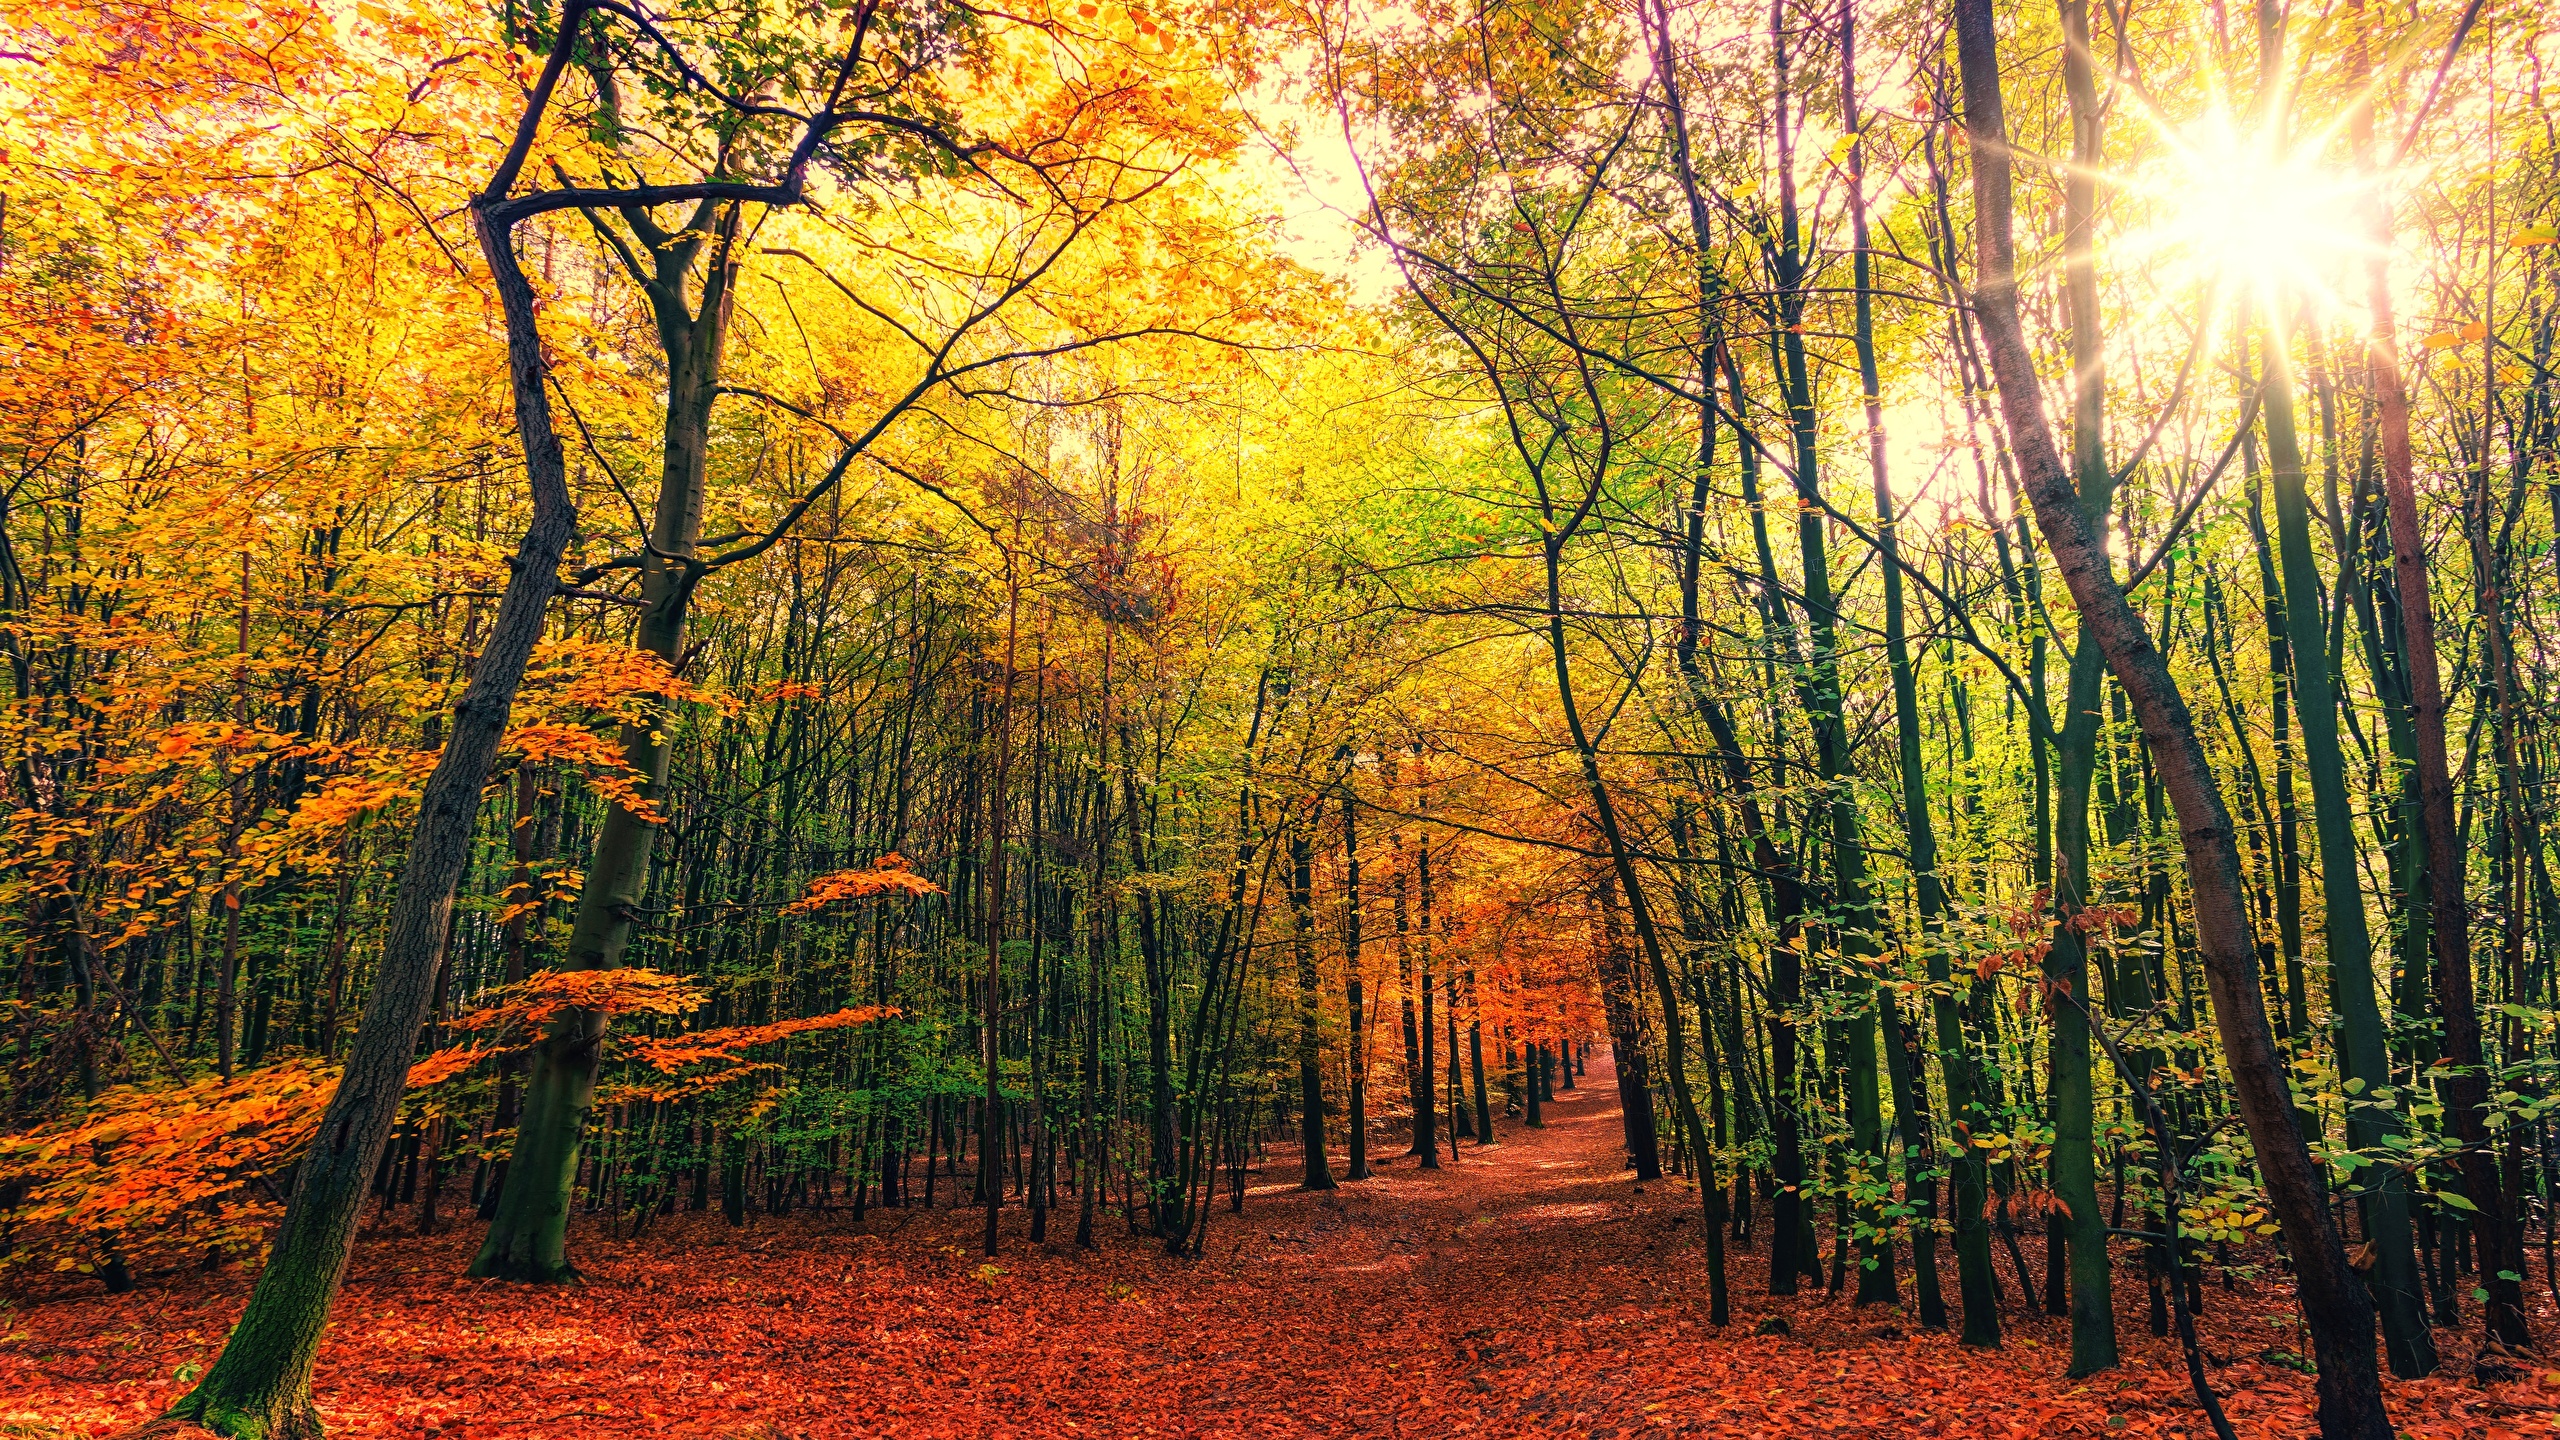 Fotos Von Lichtstrahl Blattwerk Natur Herbst Wald Baume 2560x1440